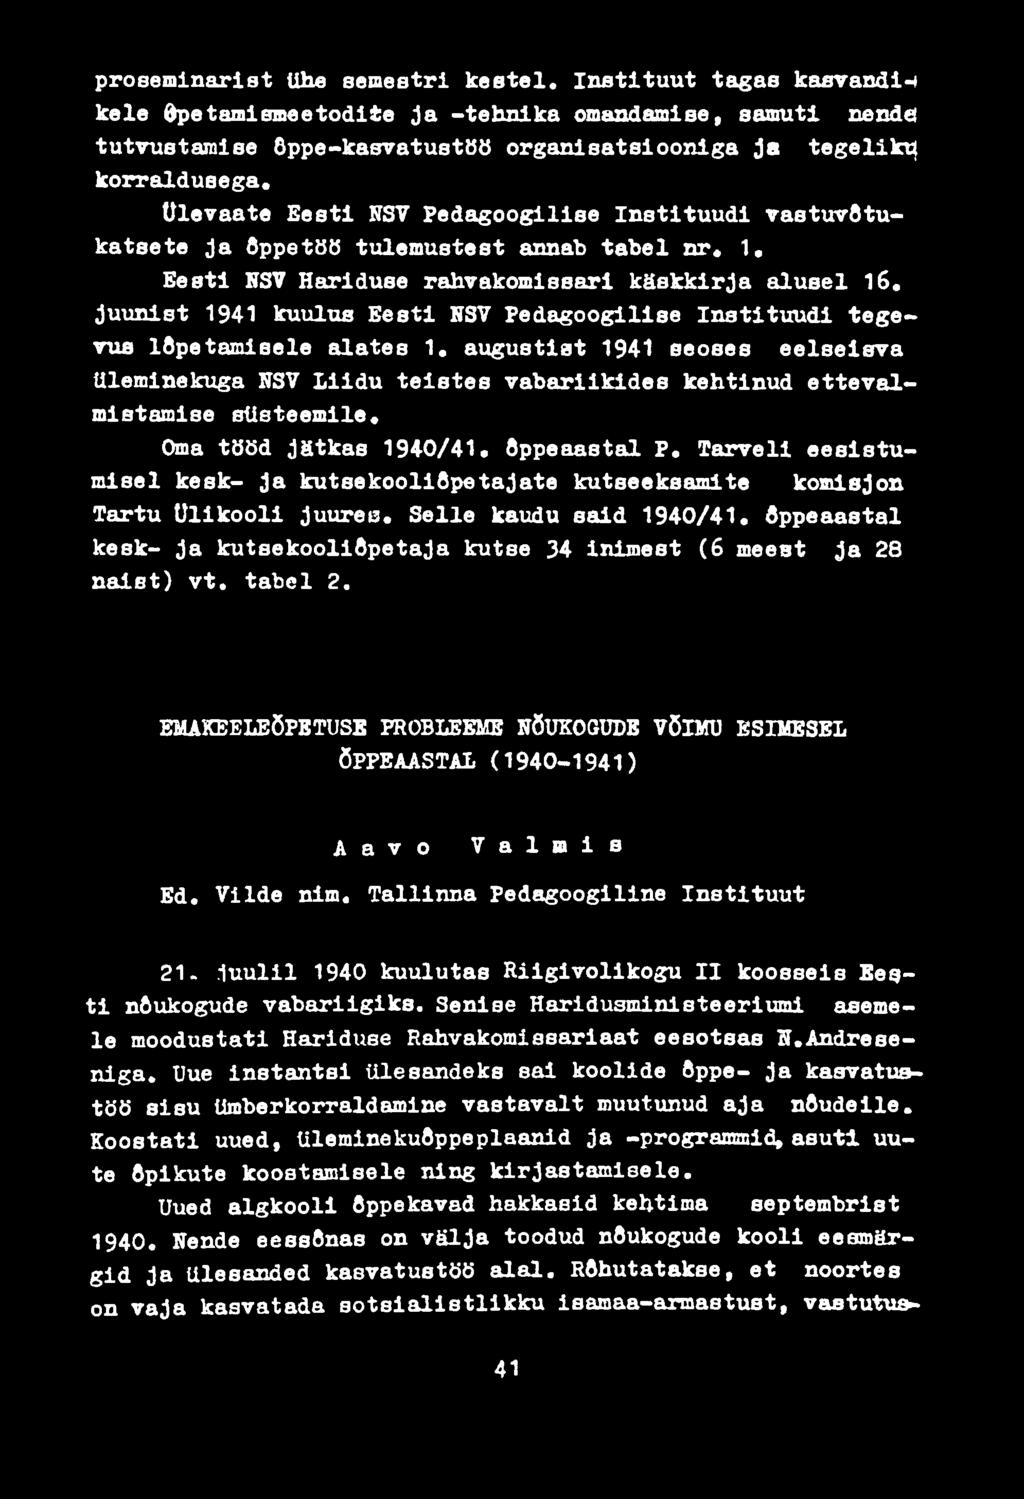 juunist 1941 kuulus Eesti NSV Pedagoogilise Instituudi tegevus lõpetamisele alates 1. augustist 1941 seoses eelseisva üleminekuga NSV Liidu teistes vabariikides kehtinud ettevalmistamise süsteemile.